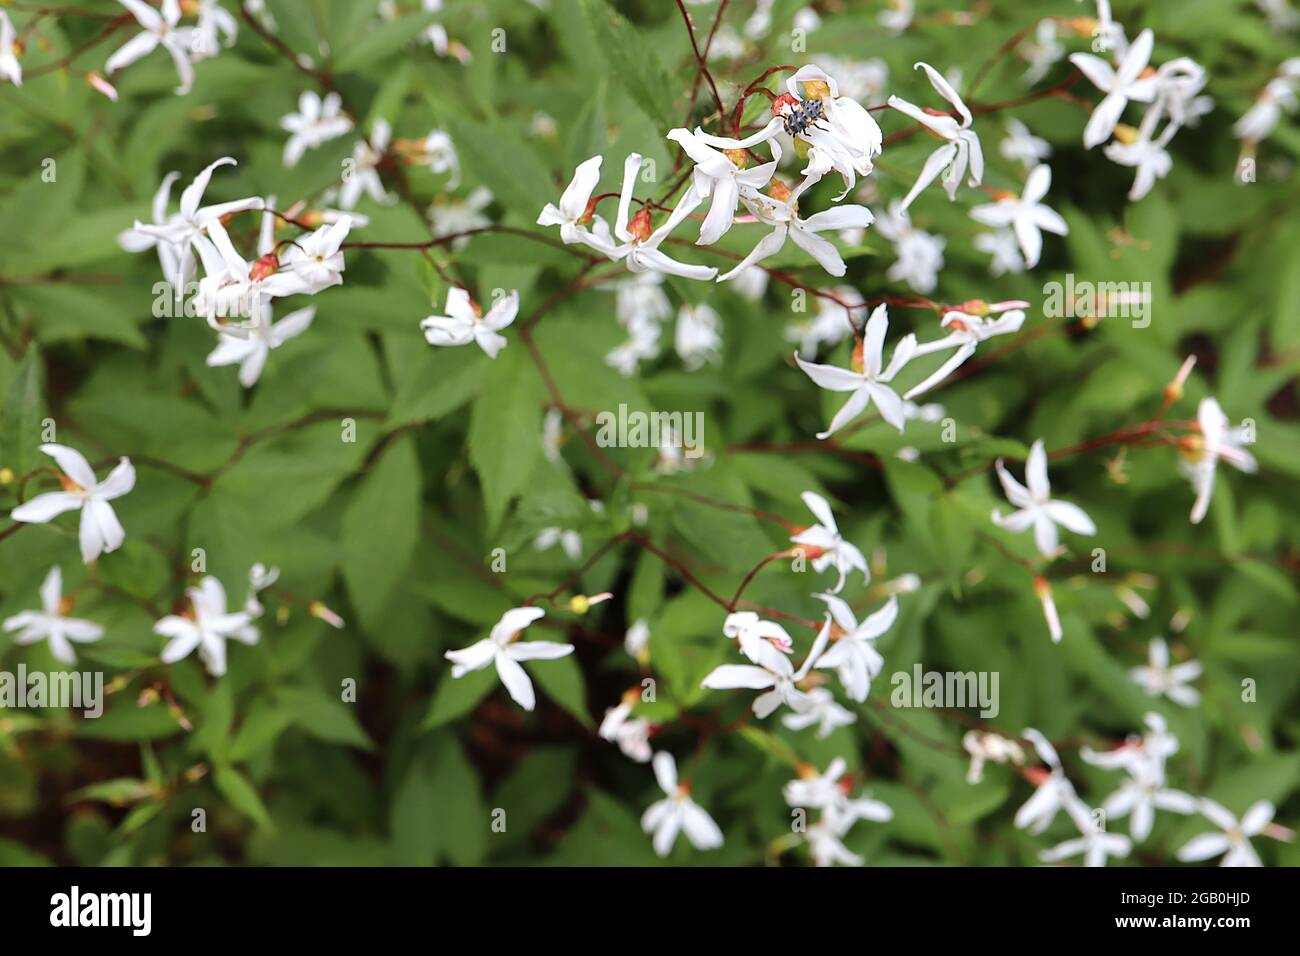 Gillenia trifoliata Bowman-Wurzel – sternförmige weiße Blüten mit schlanken Blütenblättern und palmately gelappten mittelgrünen Blättern, Juni, England, Großbritannien Stockfoto